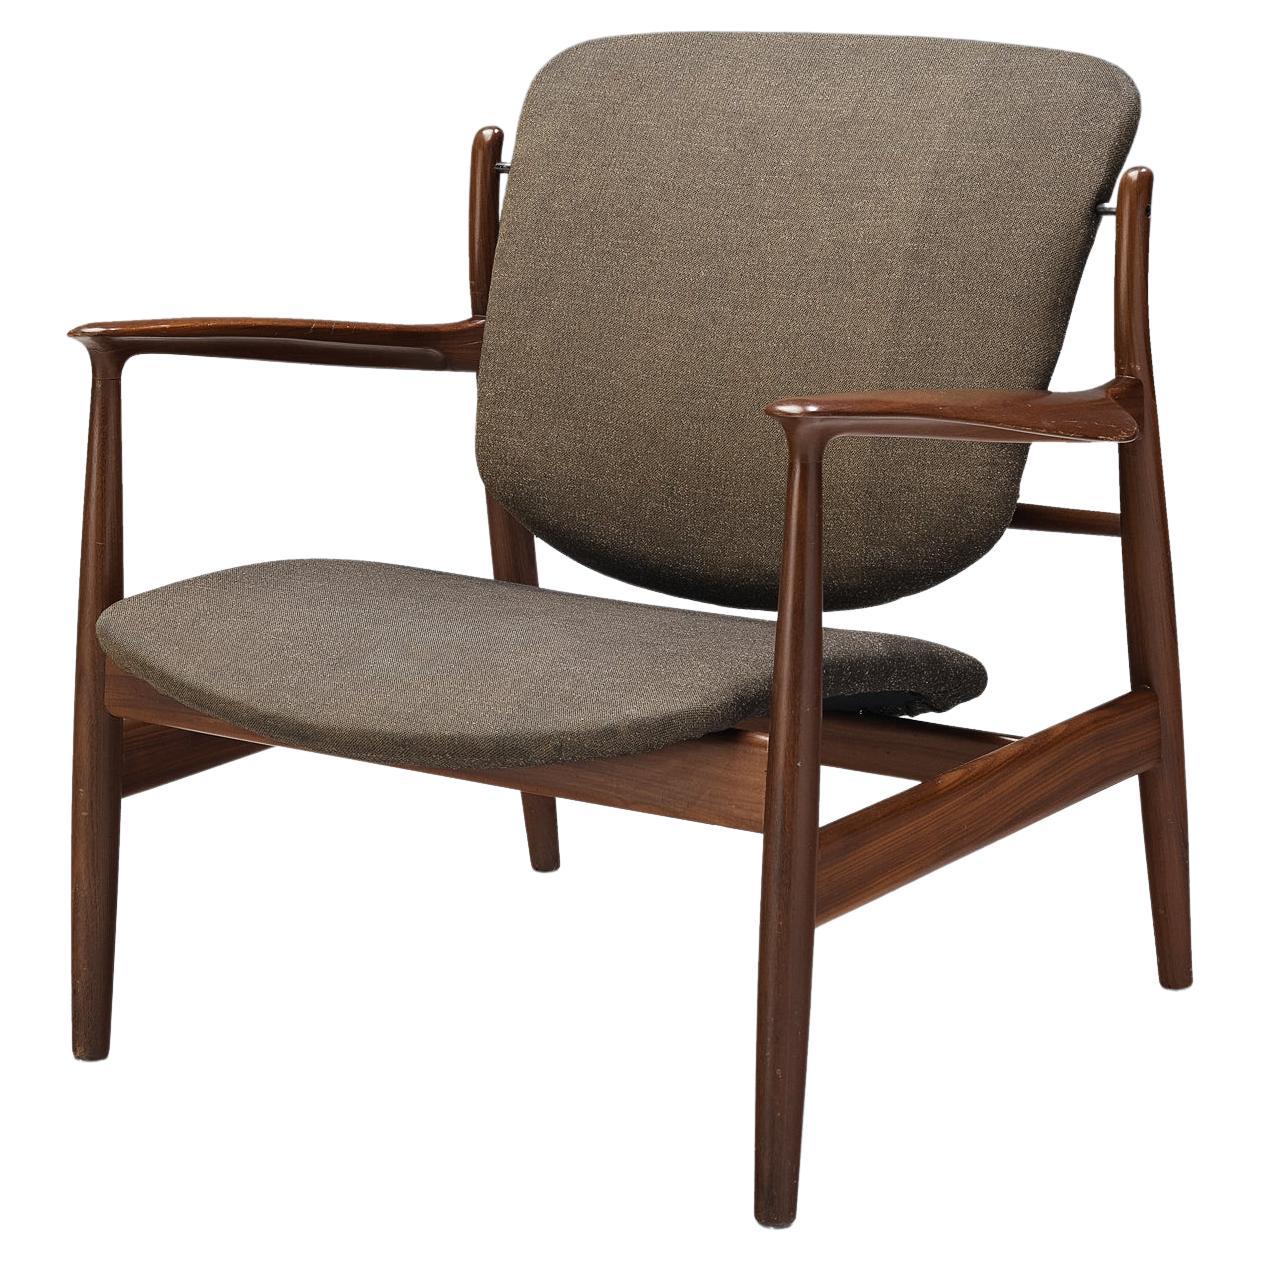 Early Model Finn Juhl for France & Søn Lounge Chair in Teak  For Sale